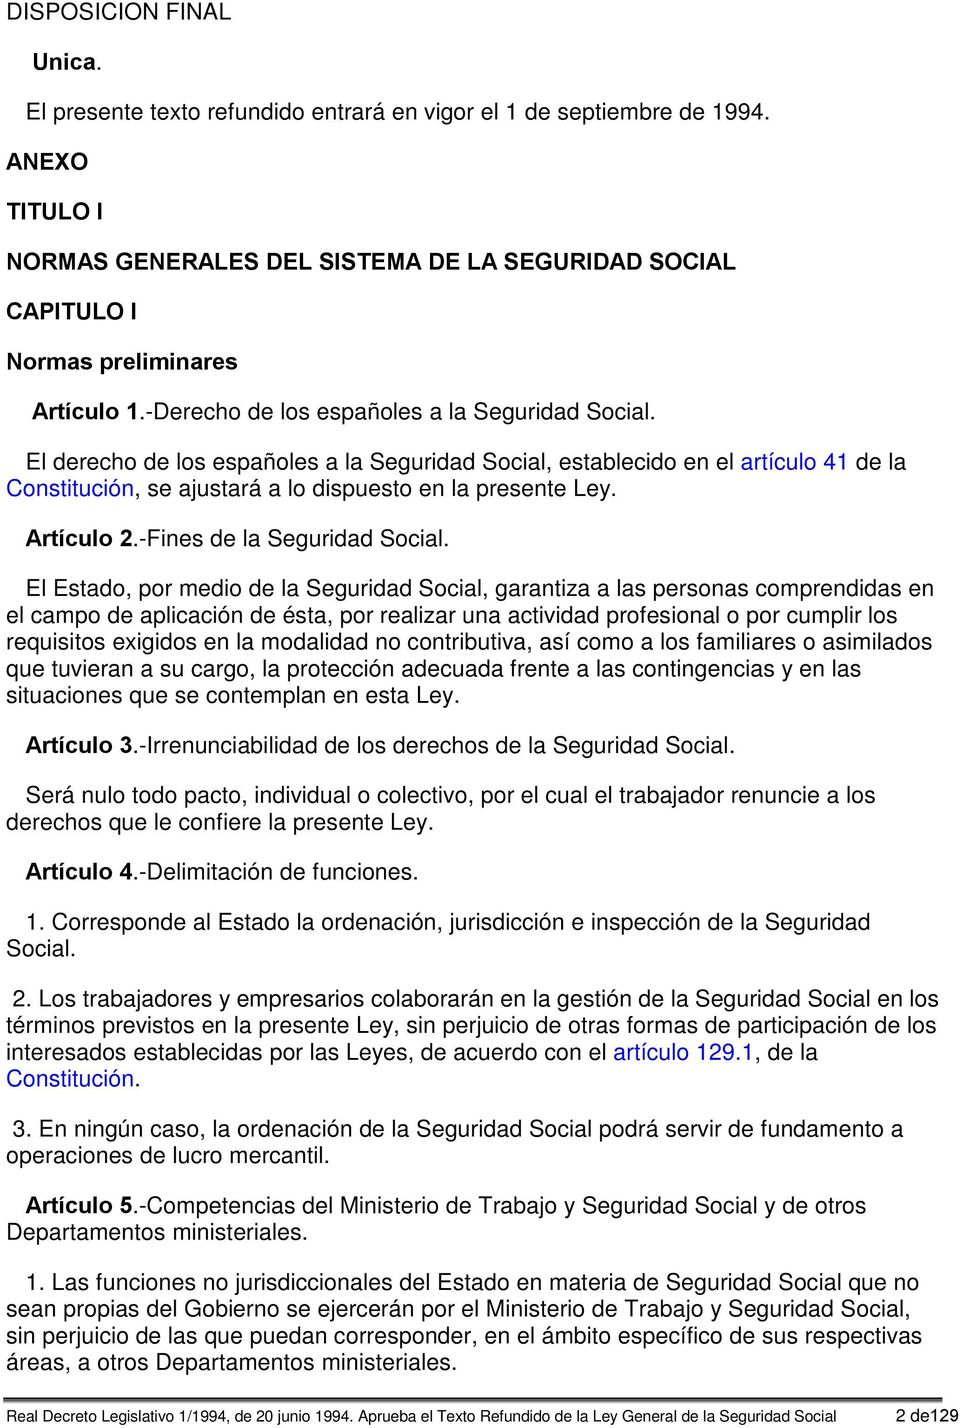 El derecho de los españoles a la Seguridad Social, establecido en el artículo 41 de la Constitución, se ajustará a lo dispuesto en la presente Ley. Artículo 2.-Fines de la Seguridad Social.